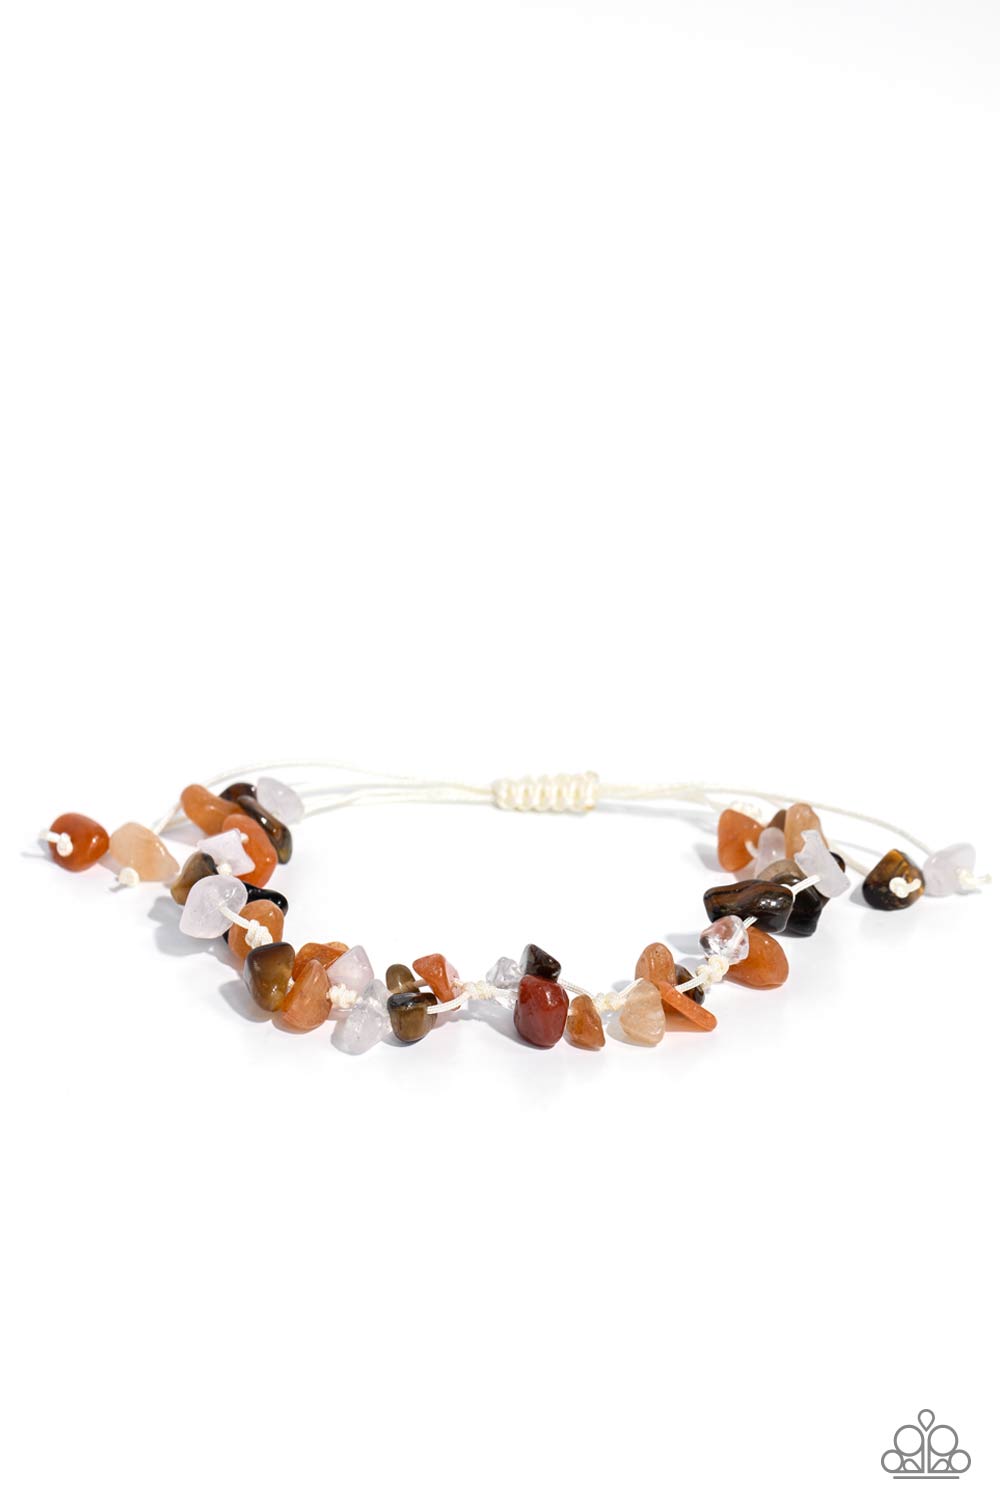 five-dollar-jewelry-knotted-kingdom-orange-bracelet-paparazzi-accessories